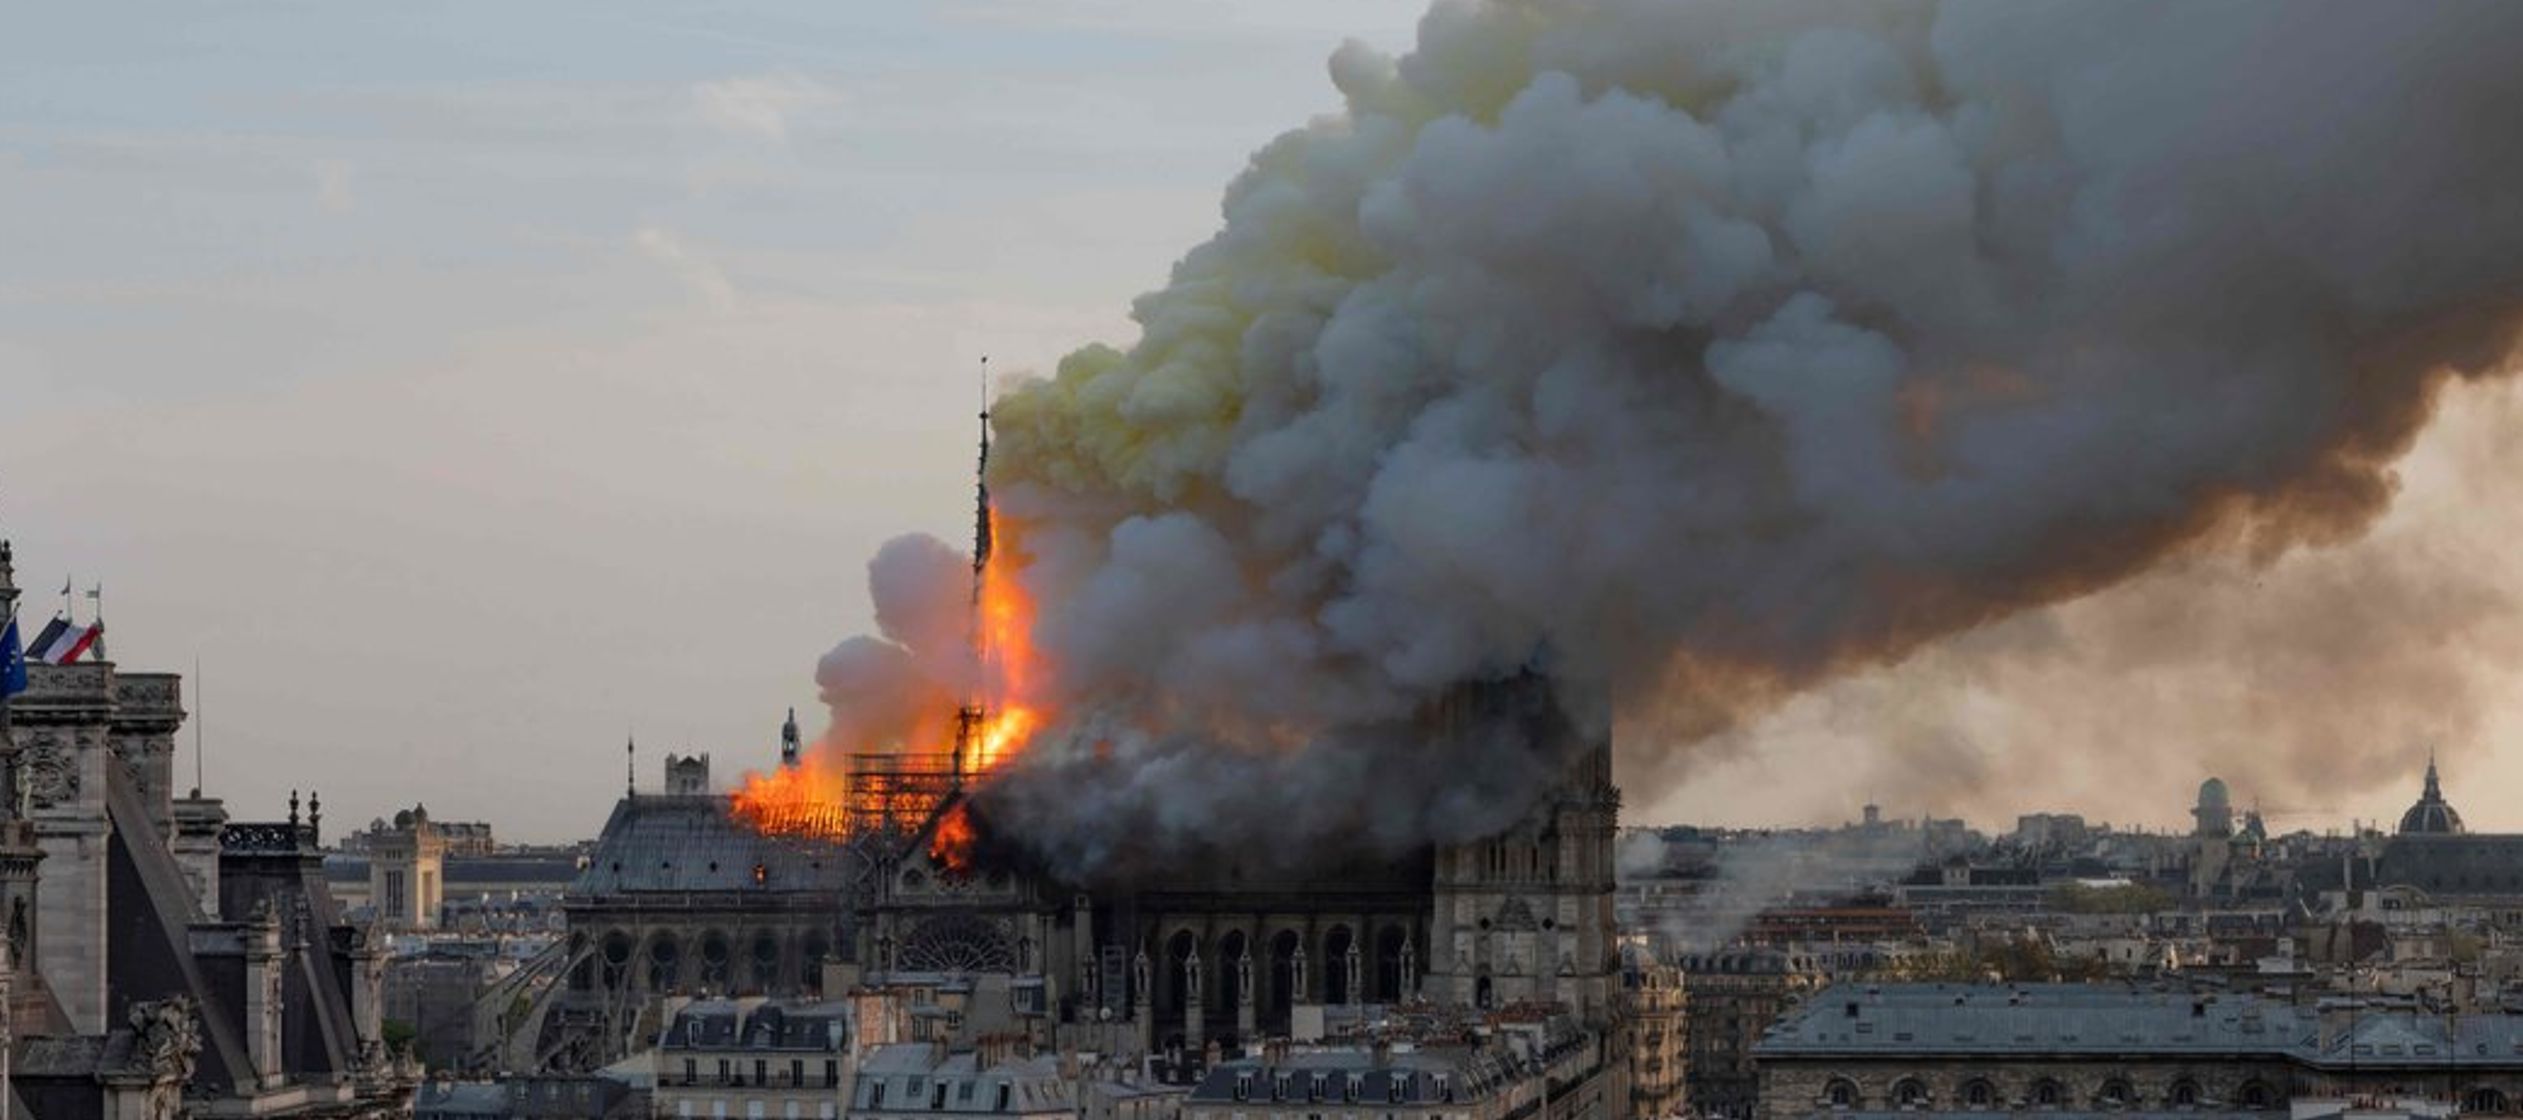 Exactamente cómo fue que empezó el incendio es lo que las autoridades francesas ya...